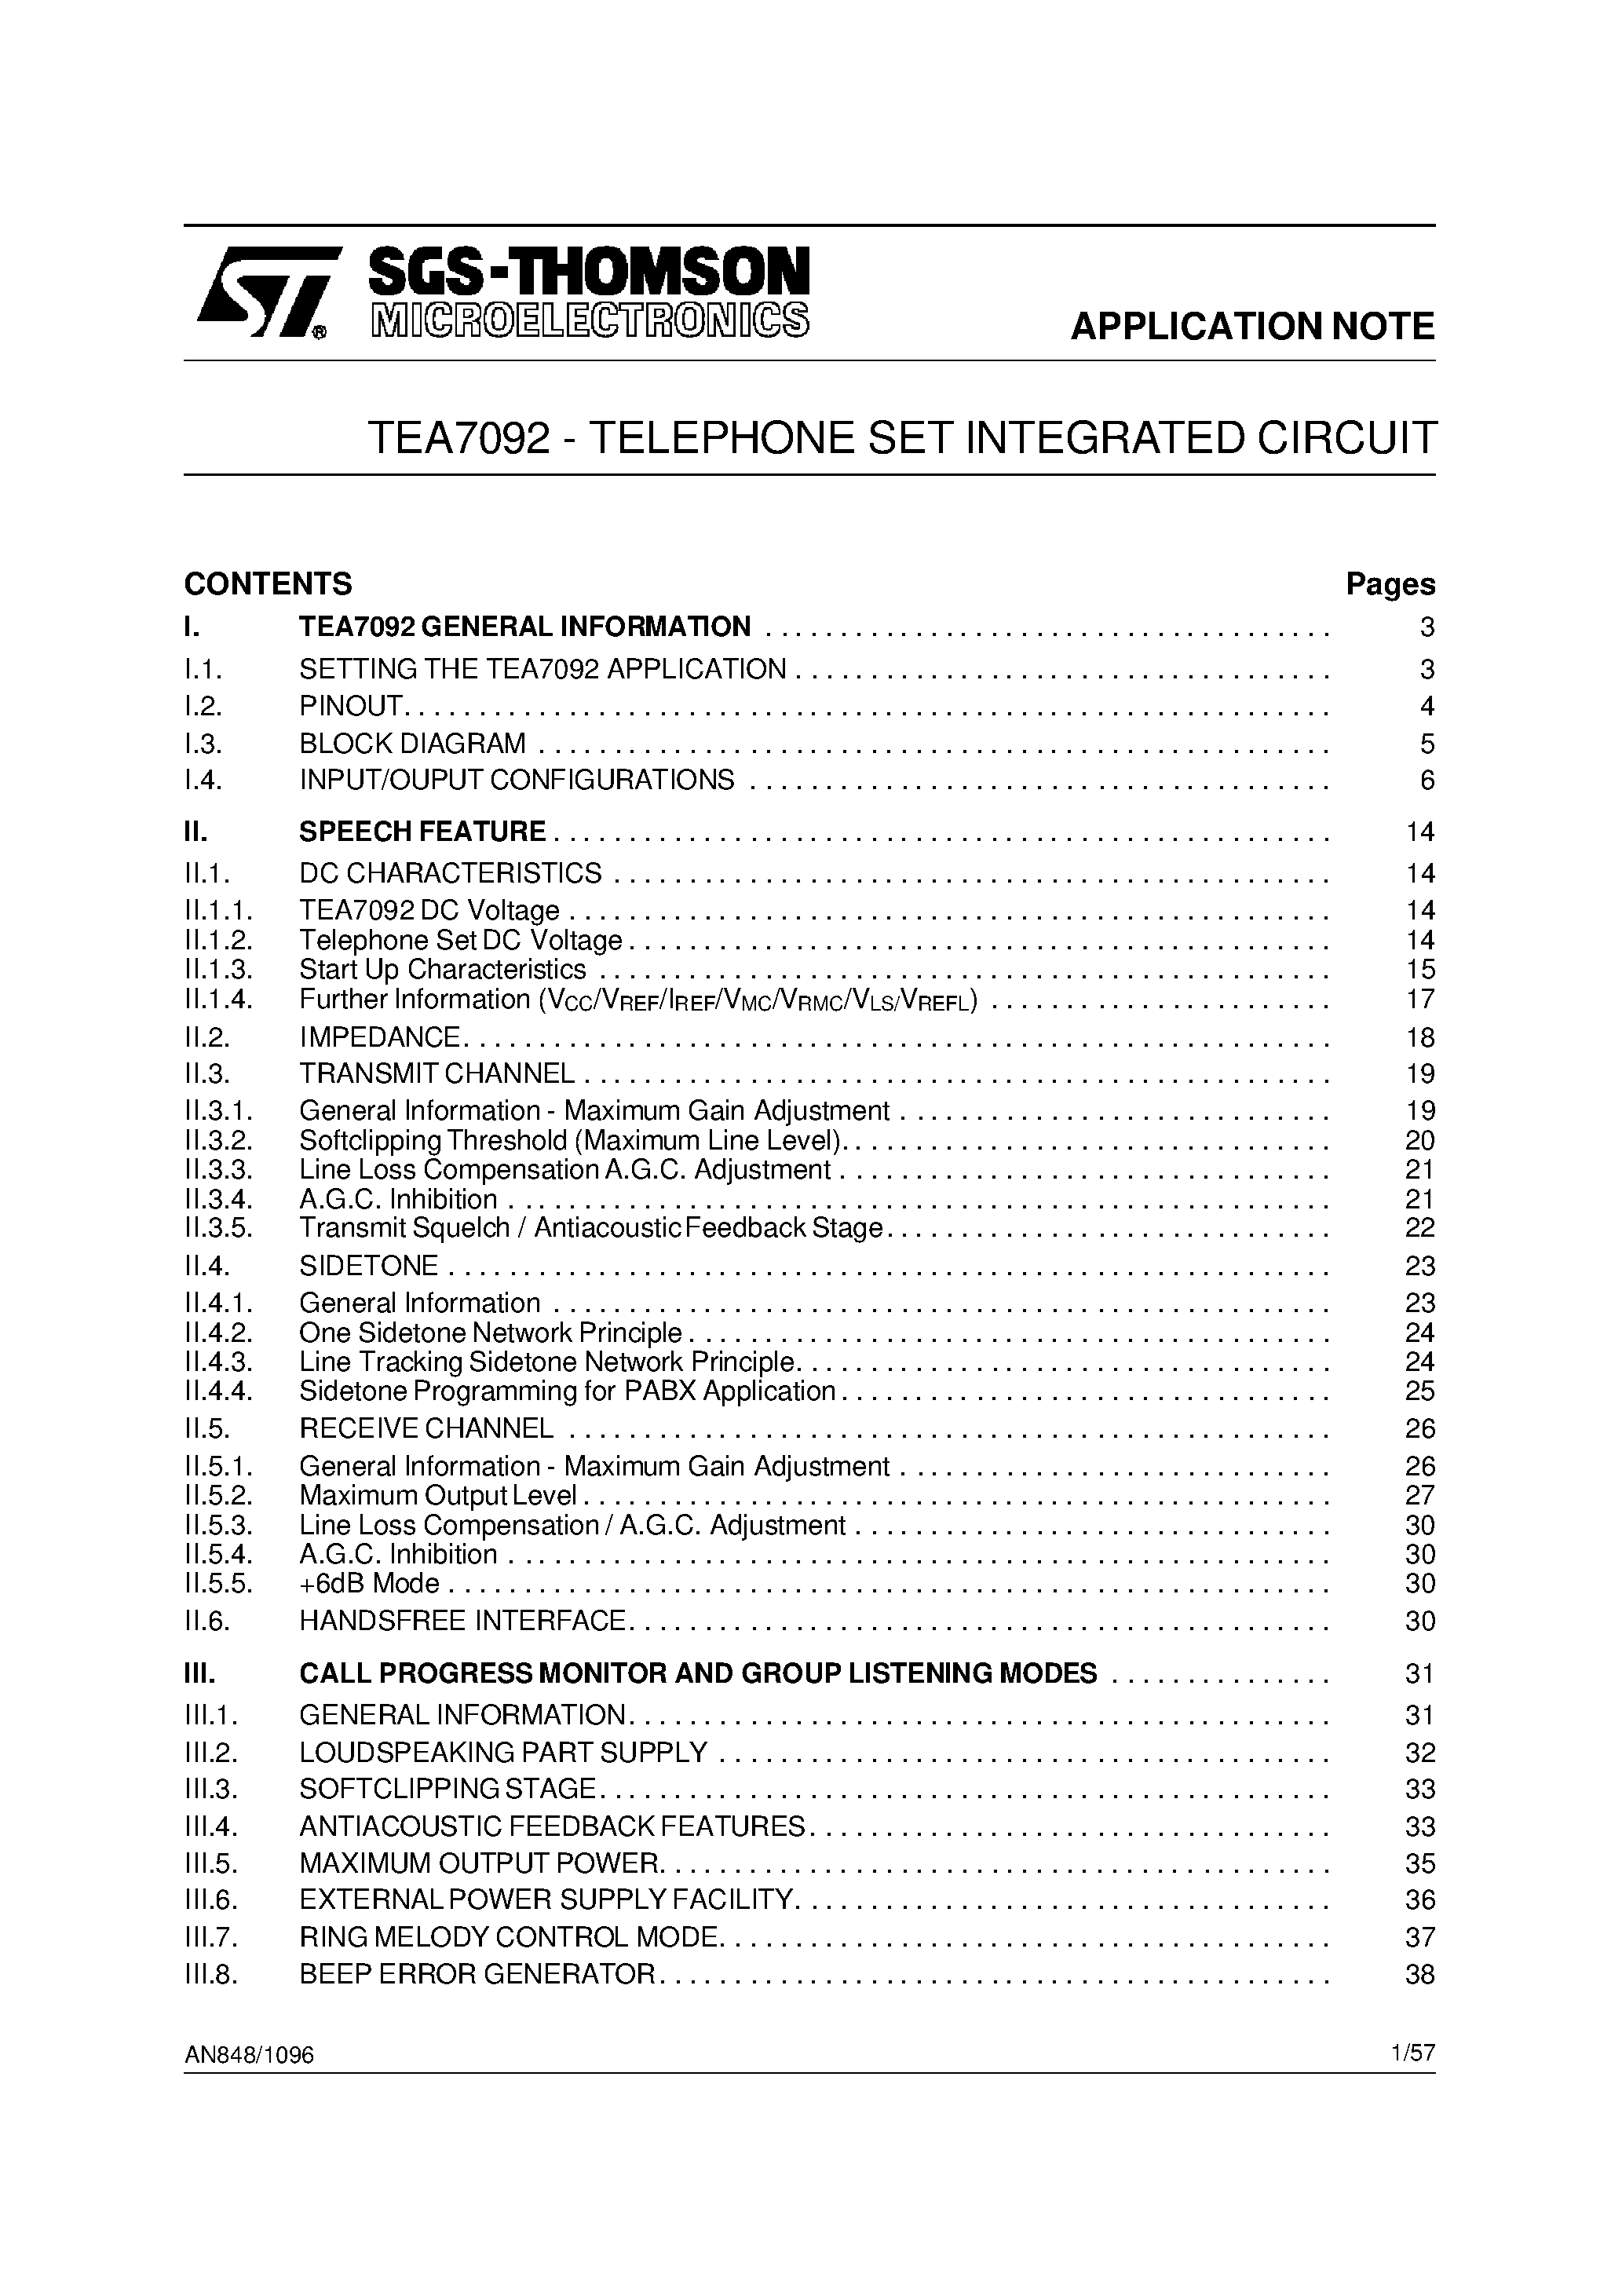 Даташит TEA7092TQT - TELEPHONE ANALOG FRONT END страница 1